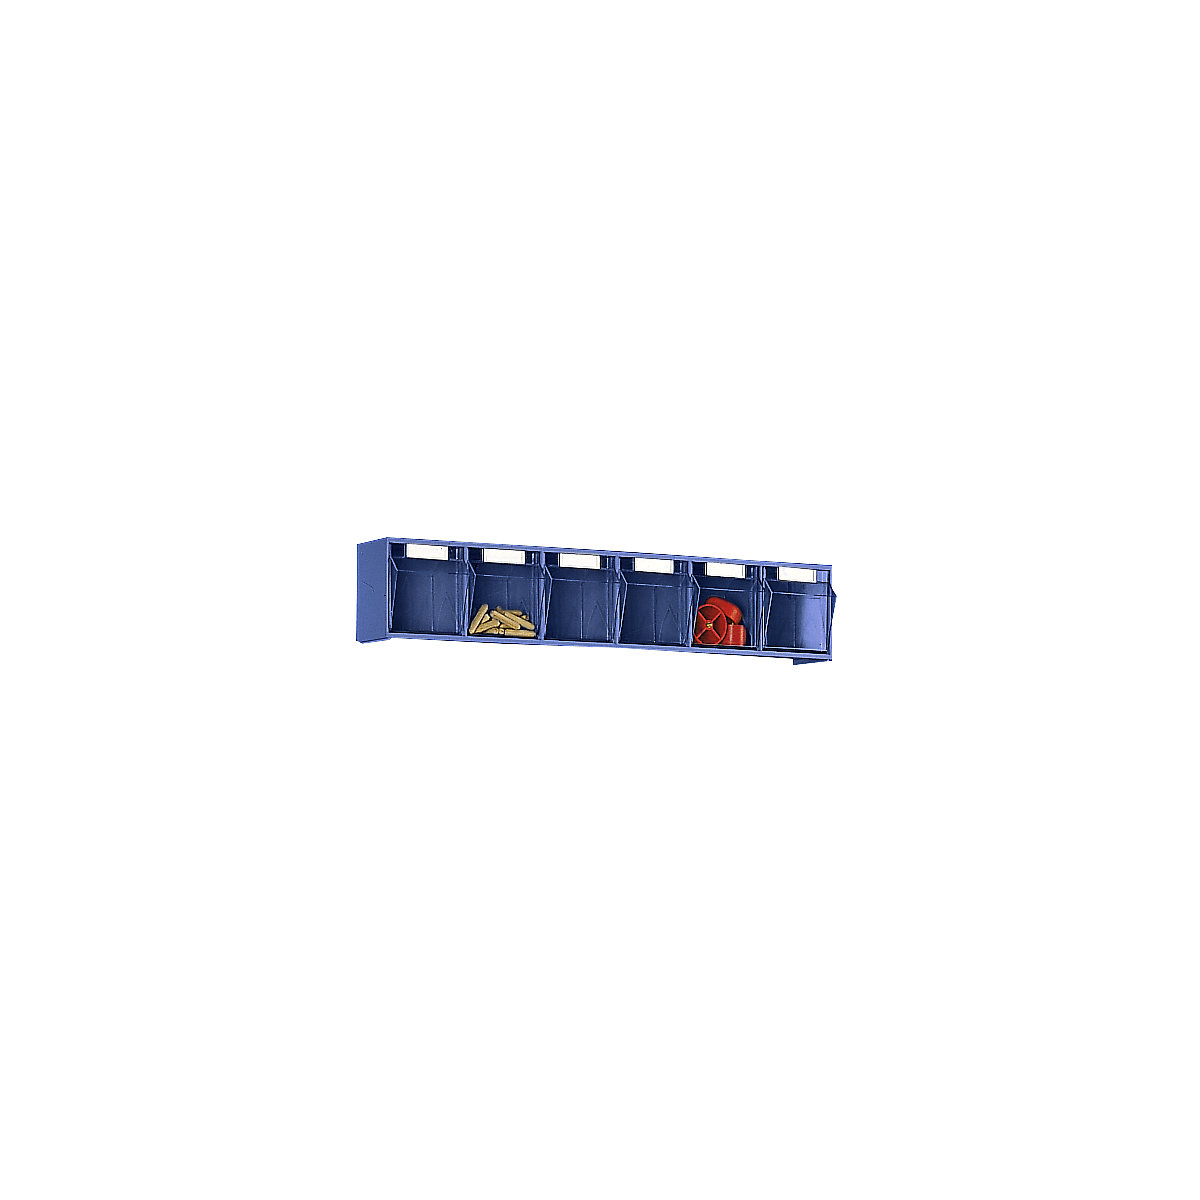 Système de bacs pivotants, casier h x l x p 113 x 600 x 91 mm, 6 bacs bleus, 10 pièces et +-6